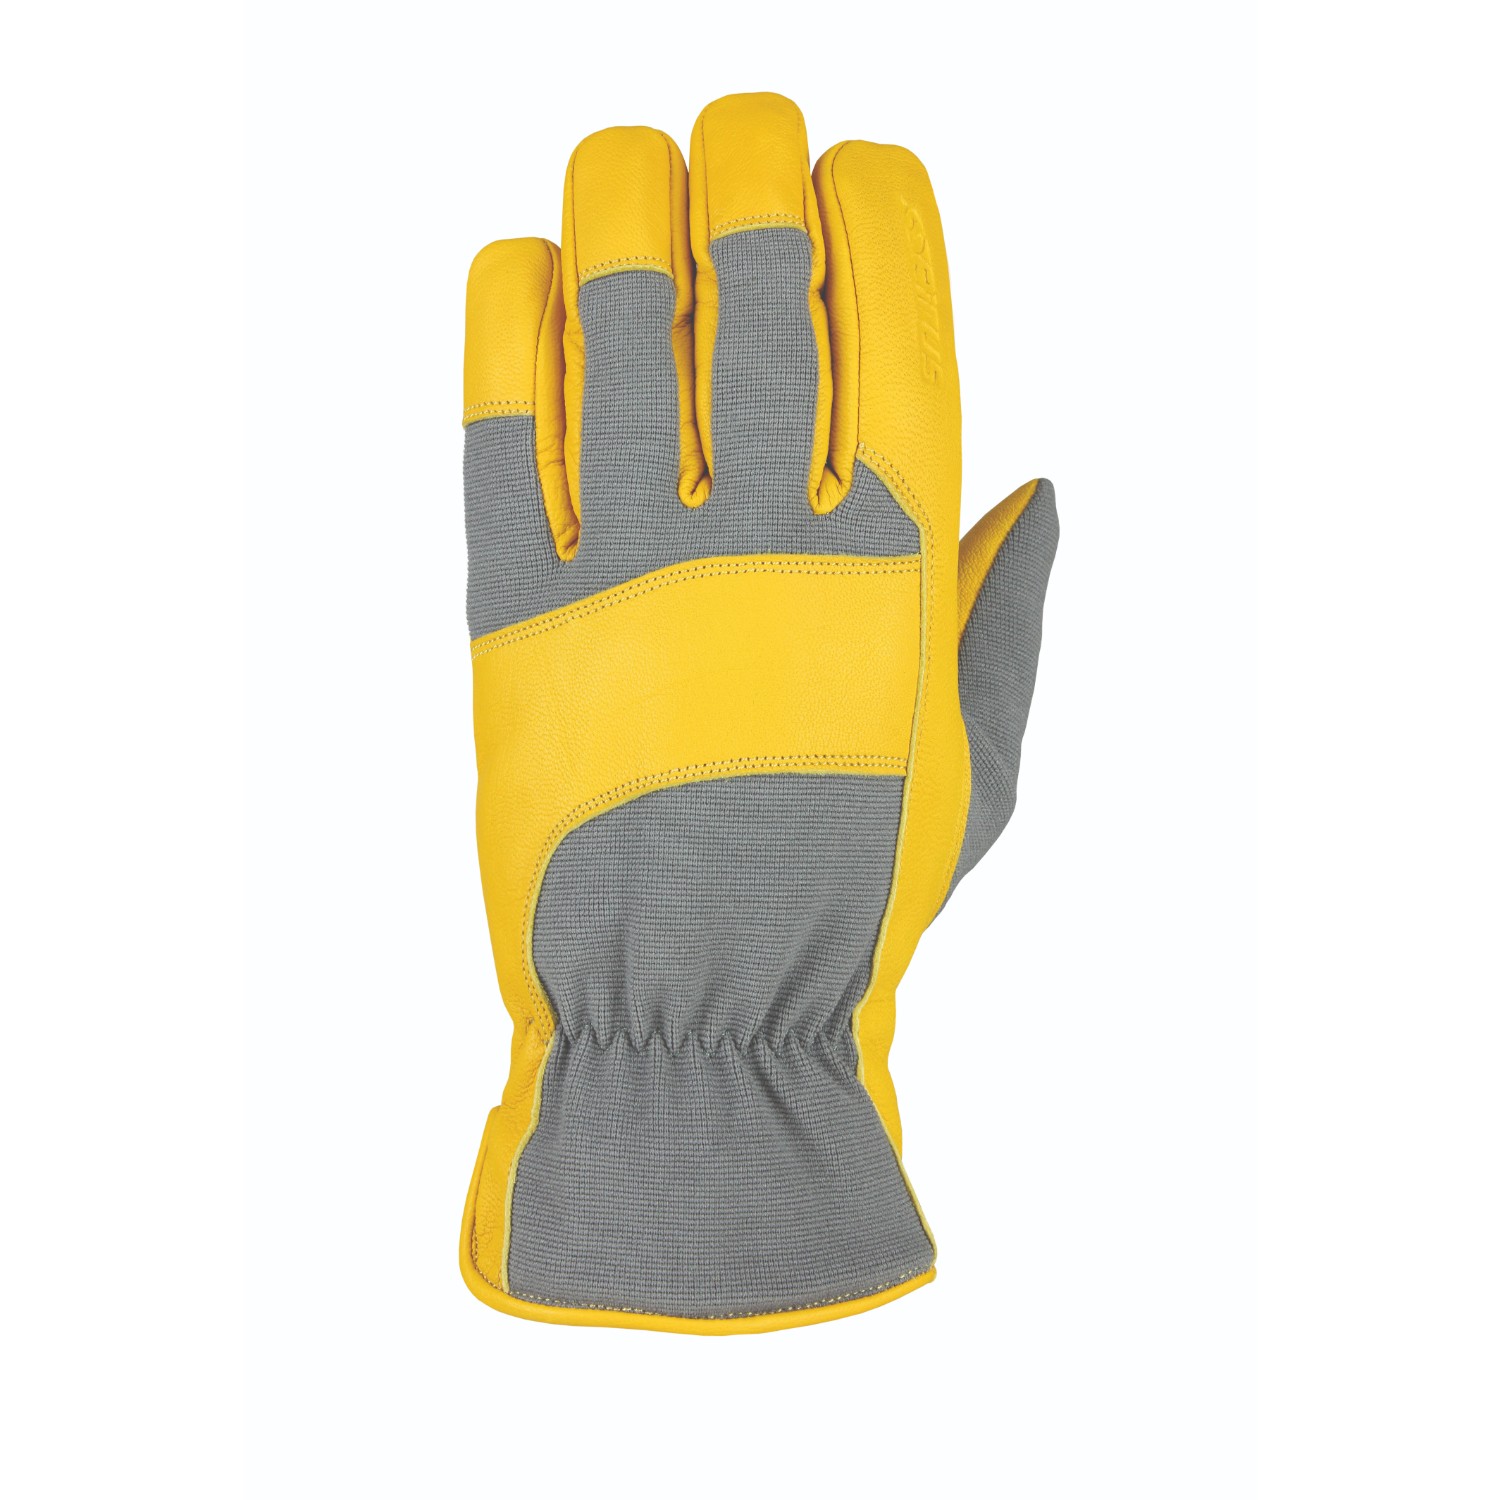 Heatwave Leather Glove Gray Tan Goatskin S